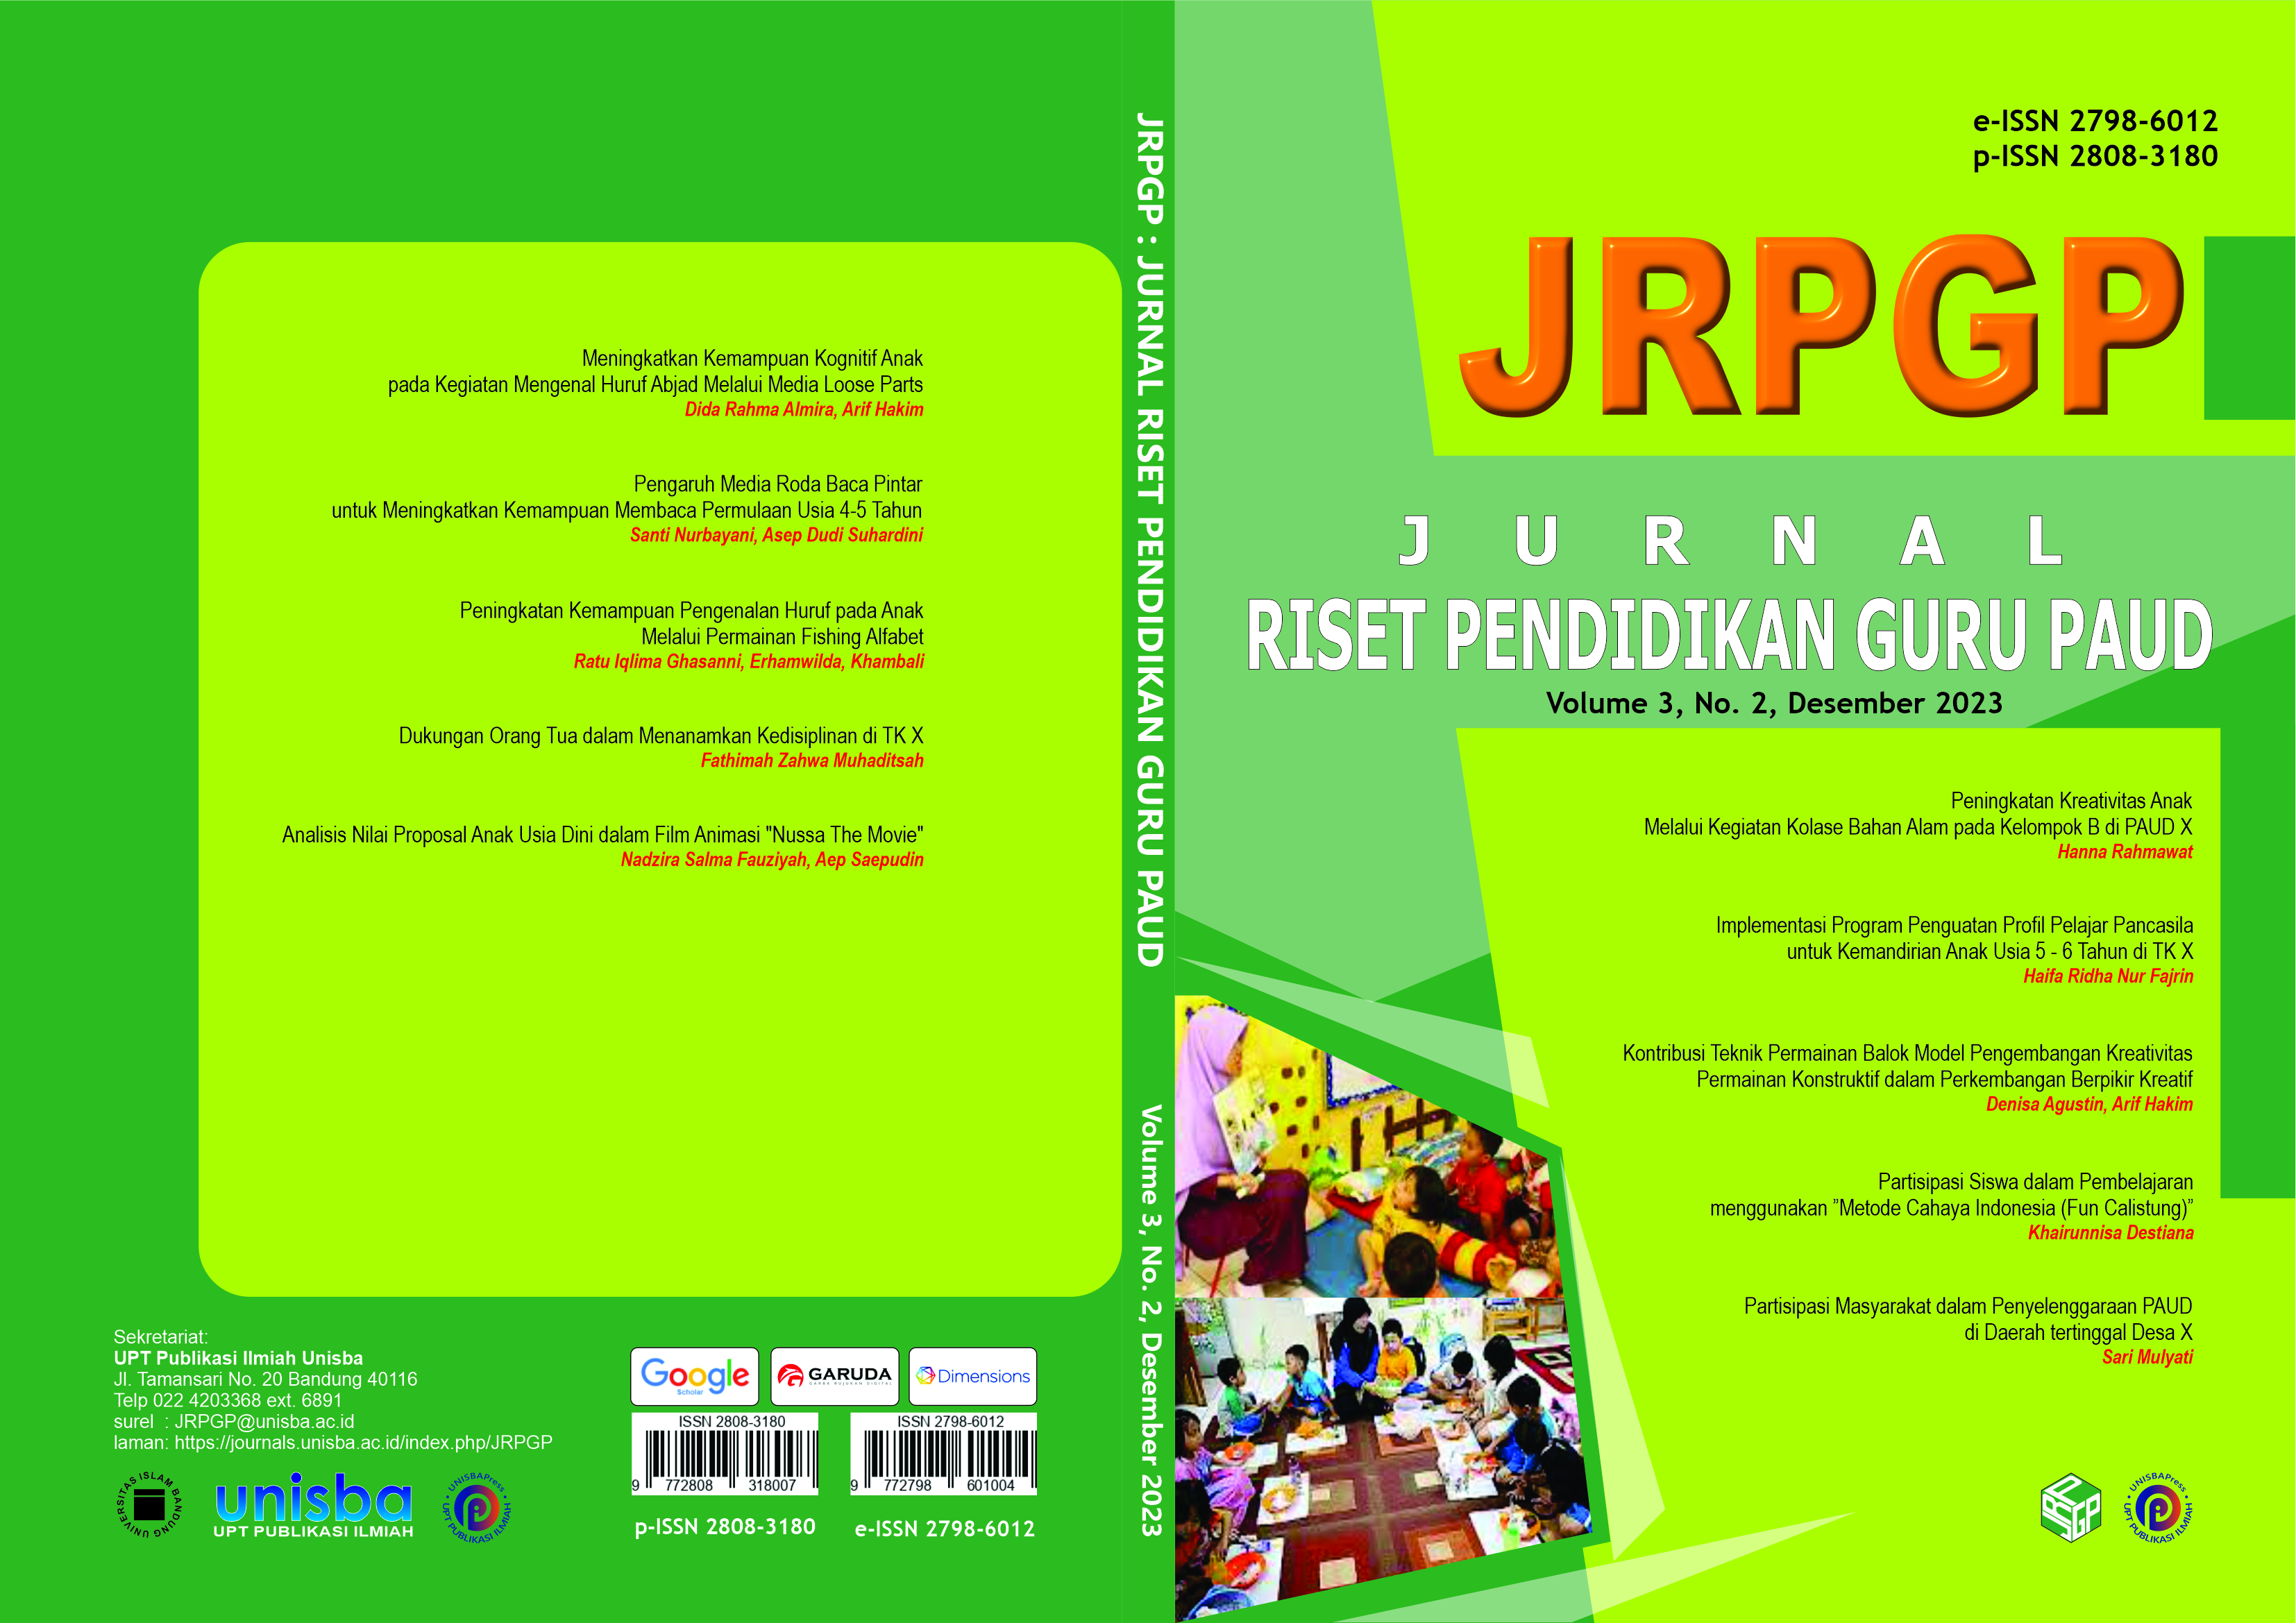 					View Volume 3, No. 2, Desember 2023, Jurnal Riset Pendidikan Guru Paud (JRPGP)
				